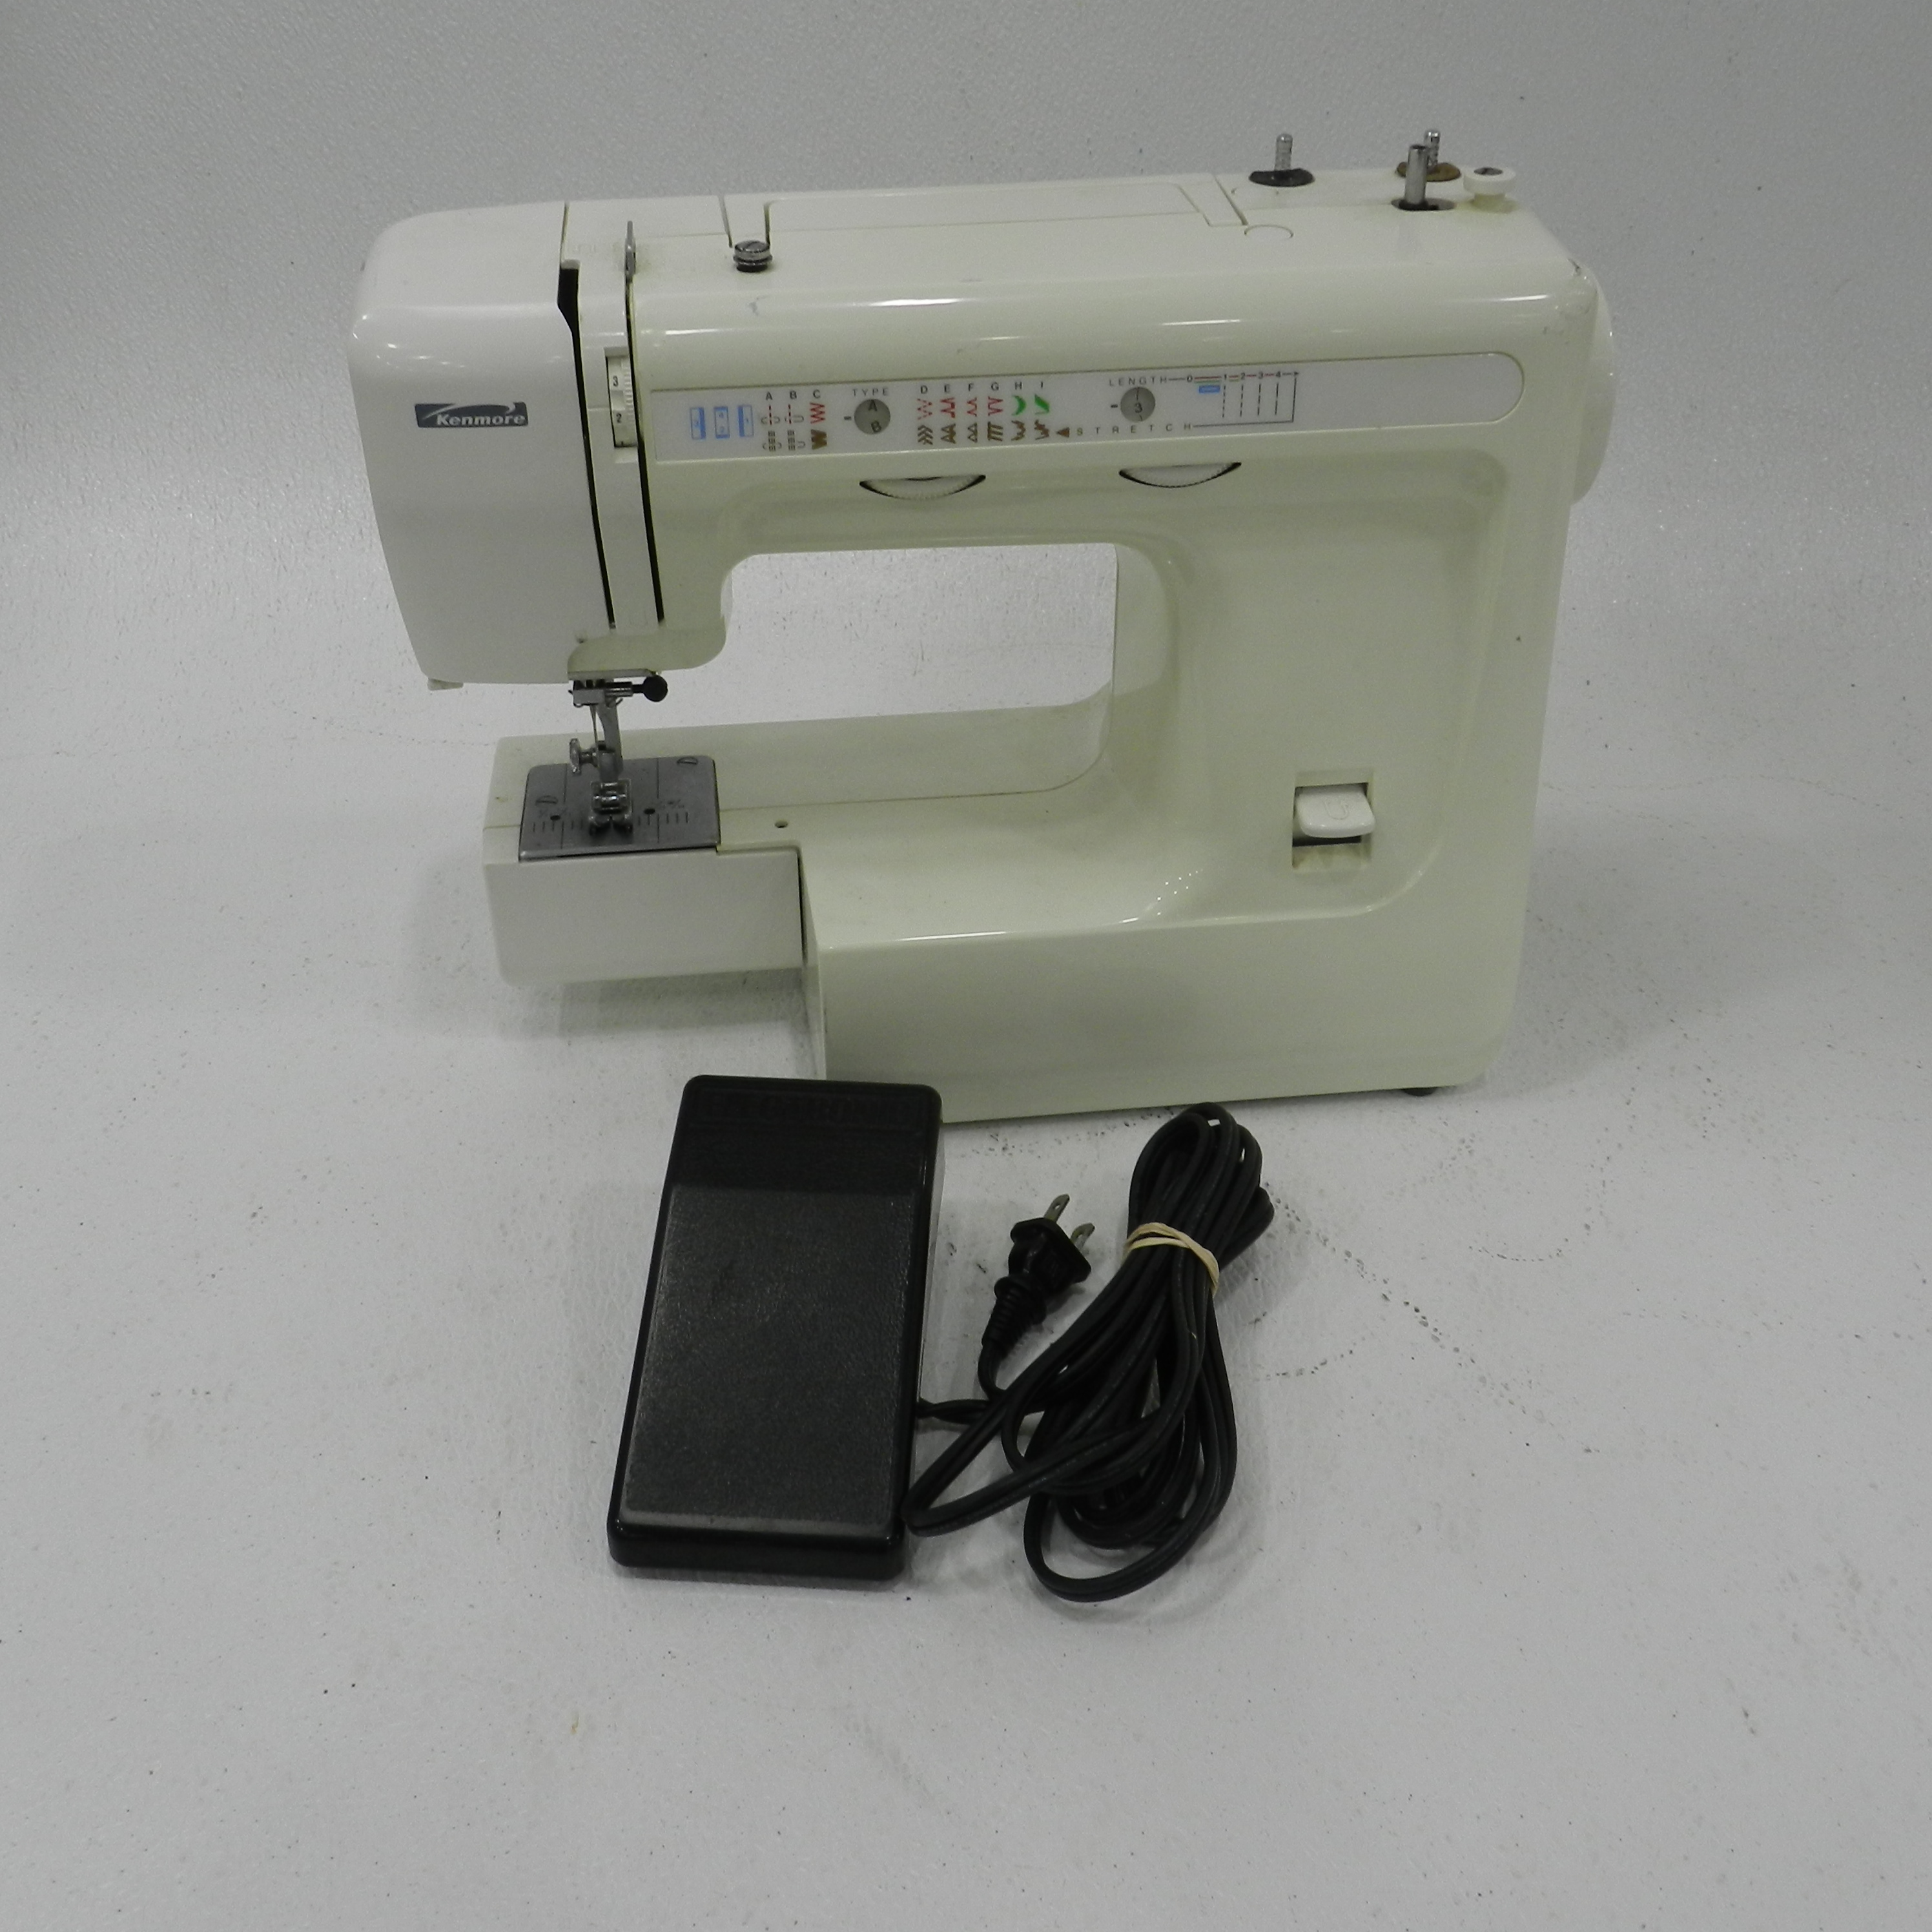 Kenmore-Sewing-Machine